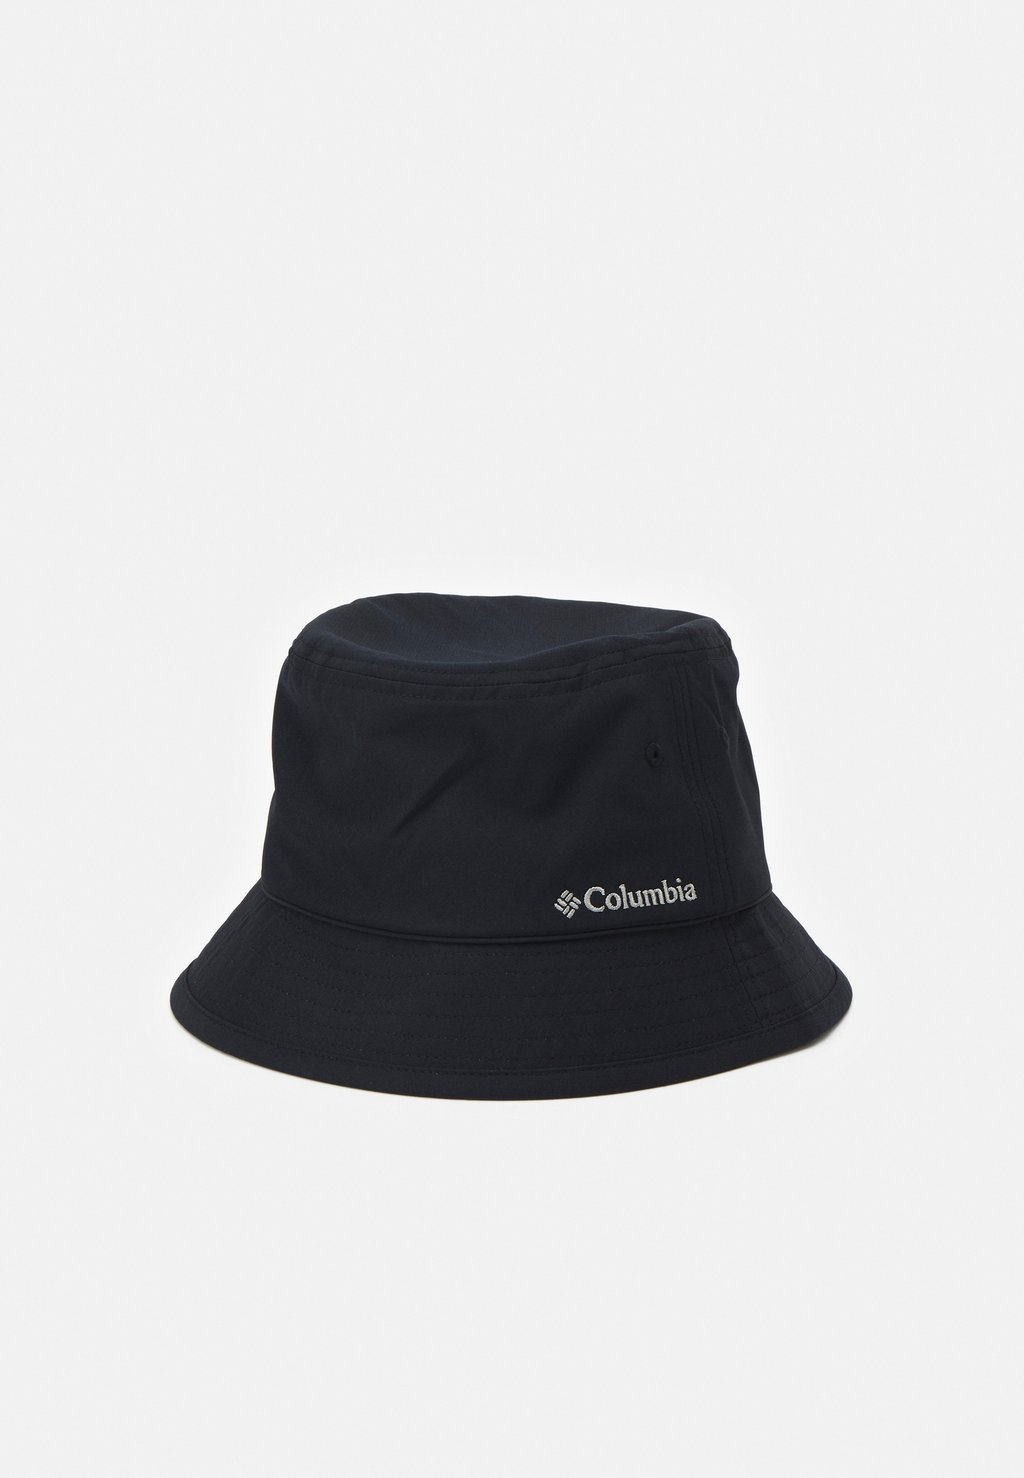 Шапка PINE MOUNTAIN BUCKET HAT UNISEX Columbia, цвет black цена и фото